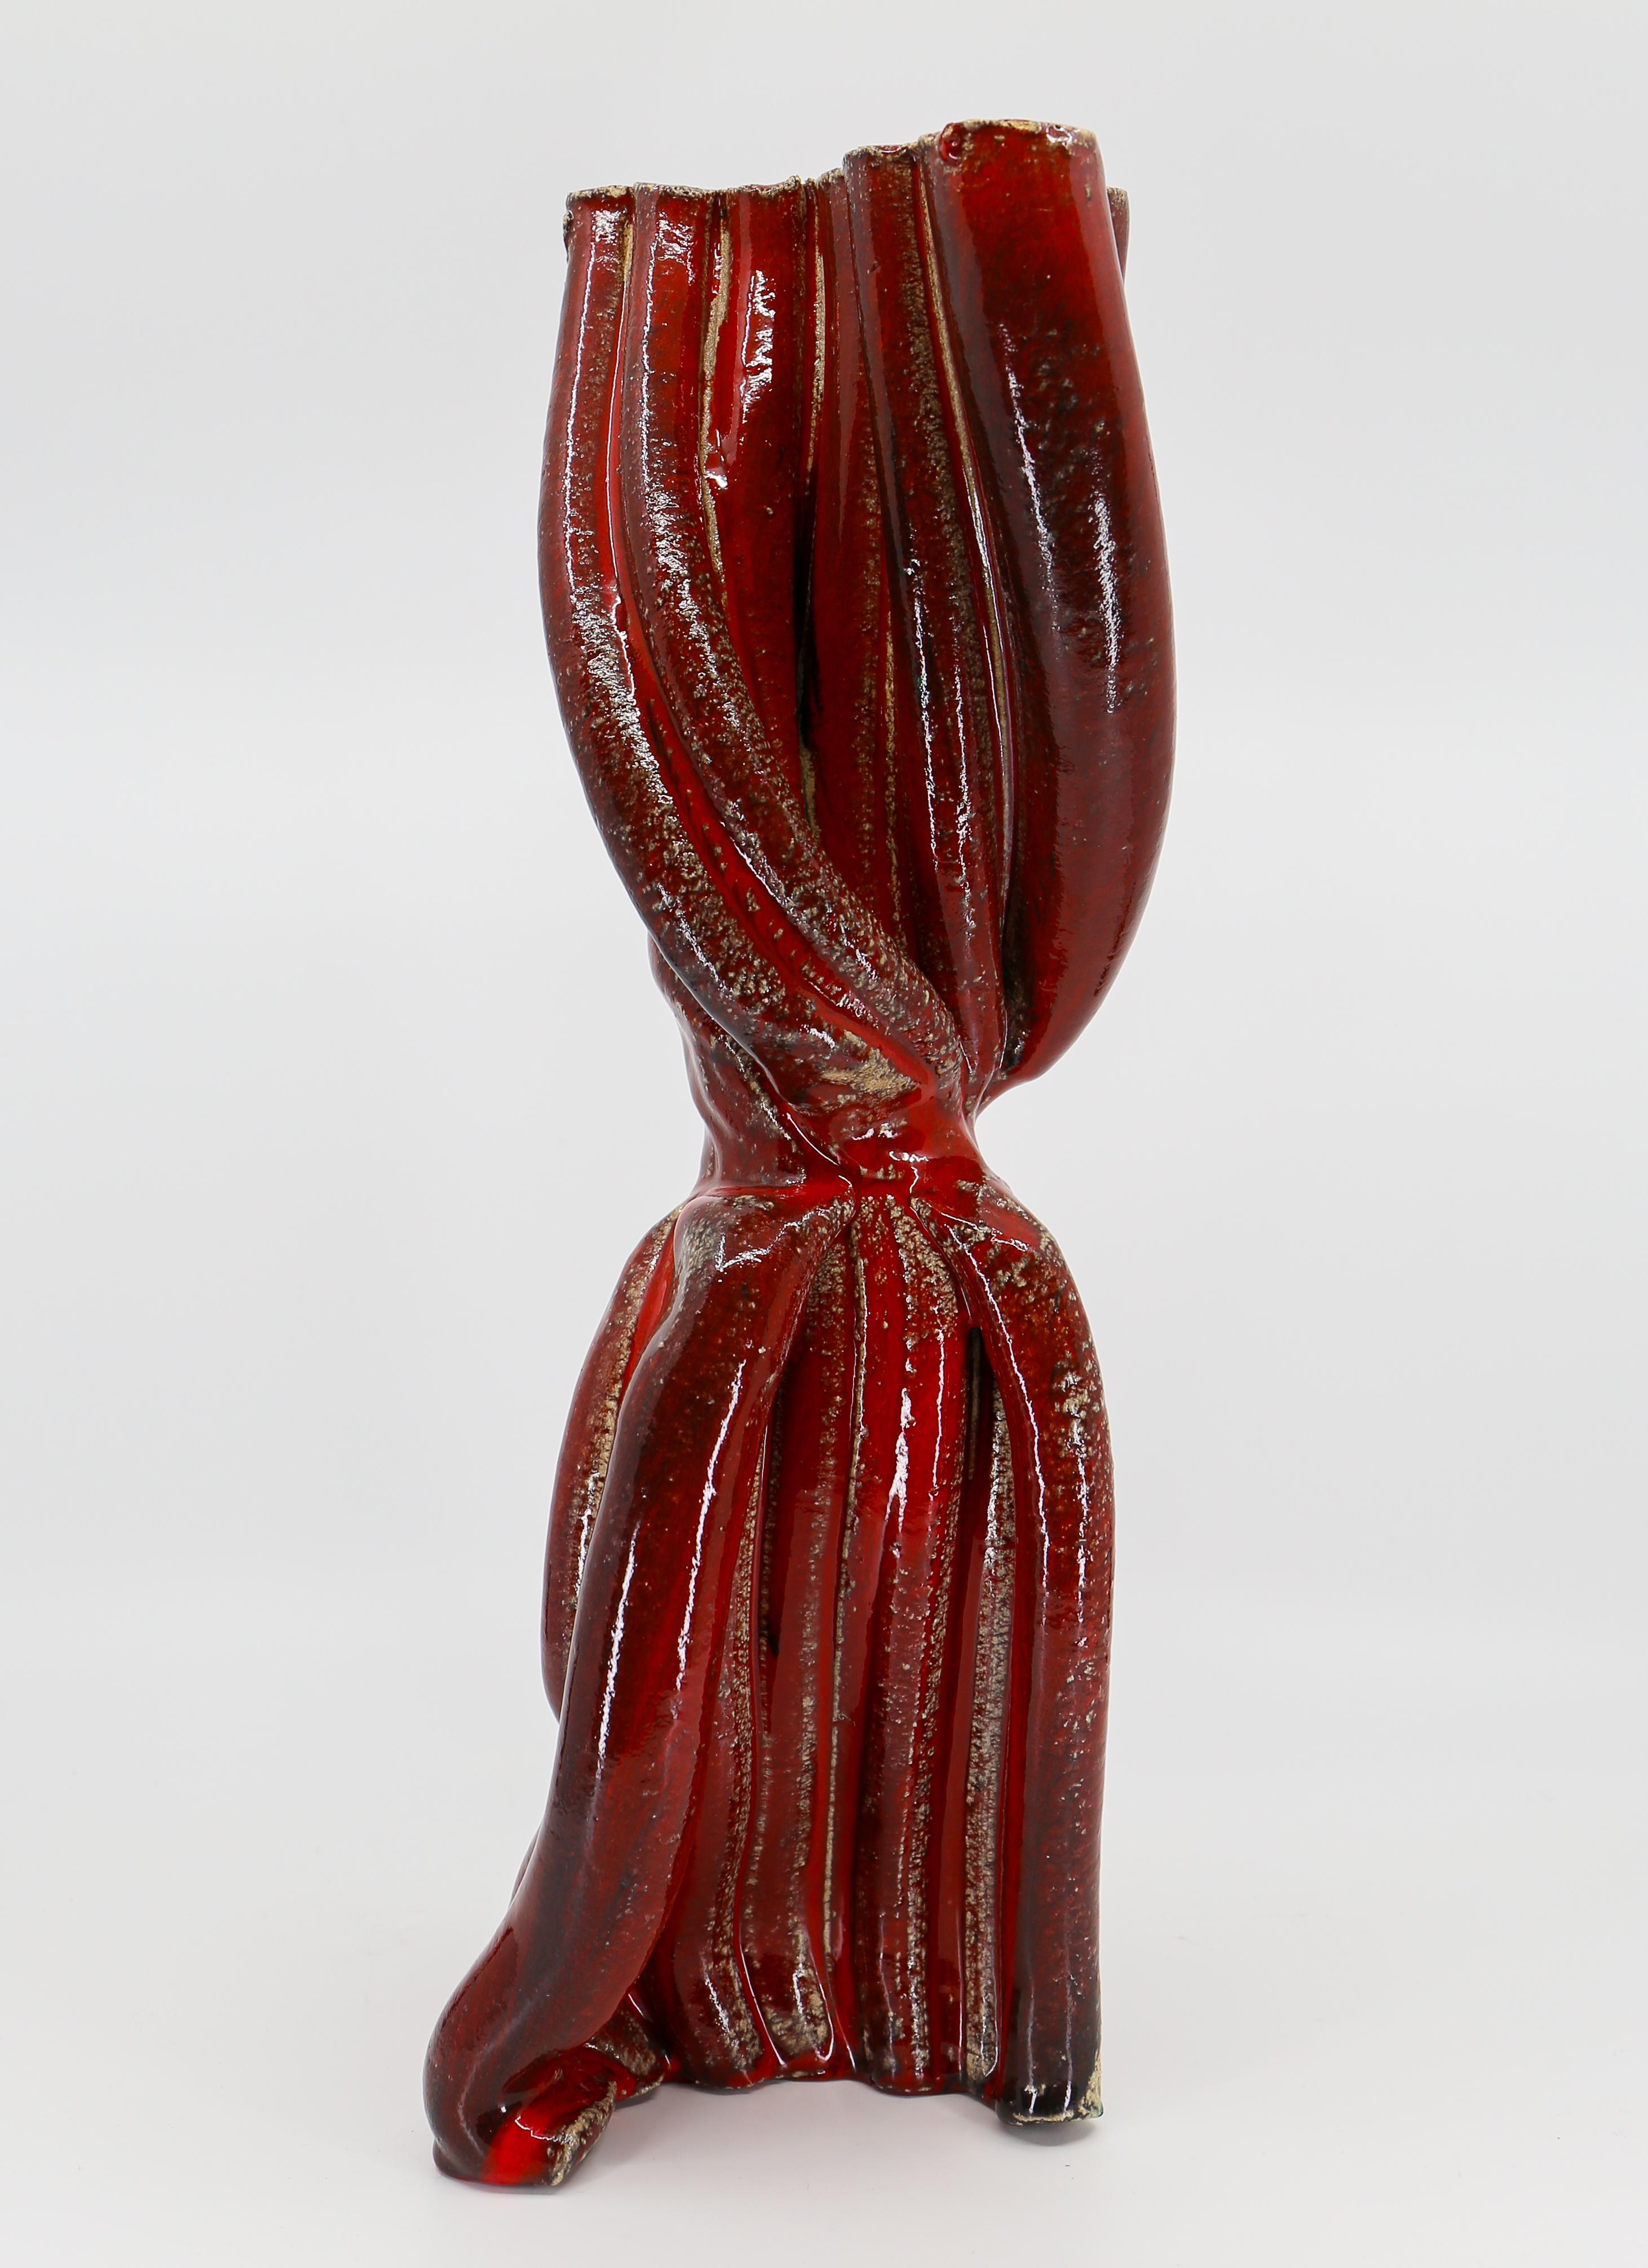 Modern Abstract Brutalist Design Vase Sculpture For Sale 2